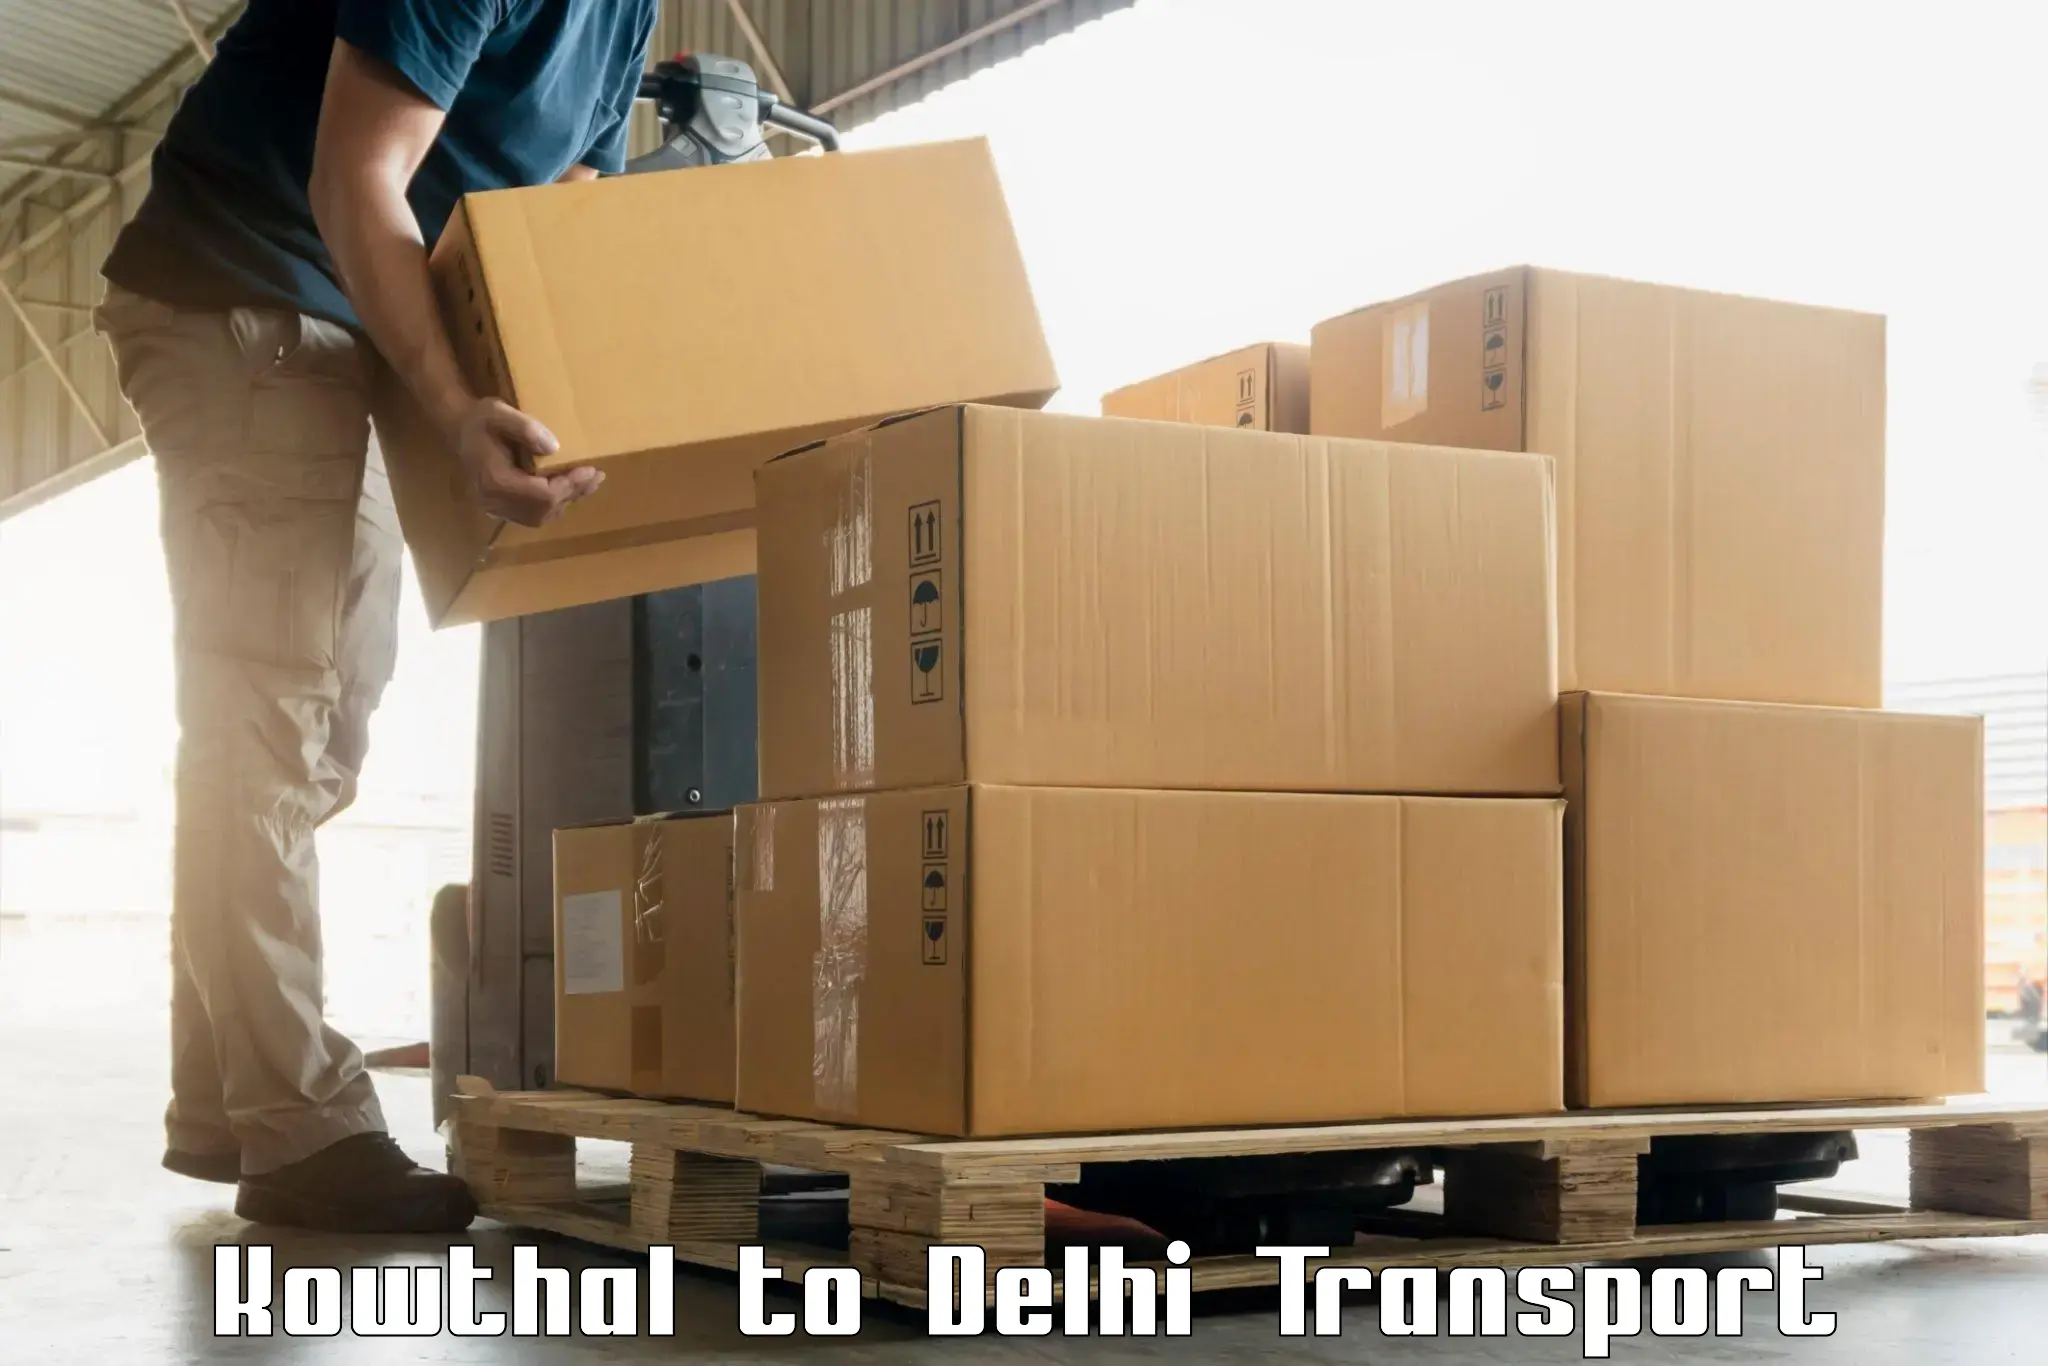 Sending bike to another city in Kowthal to Jamia Millia Islamia New Delhi